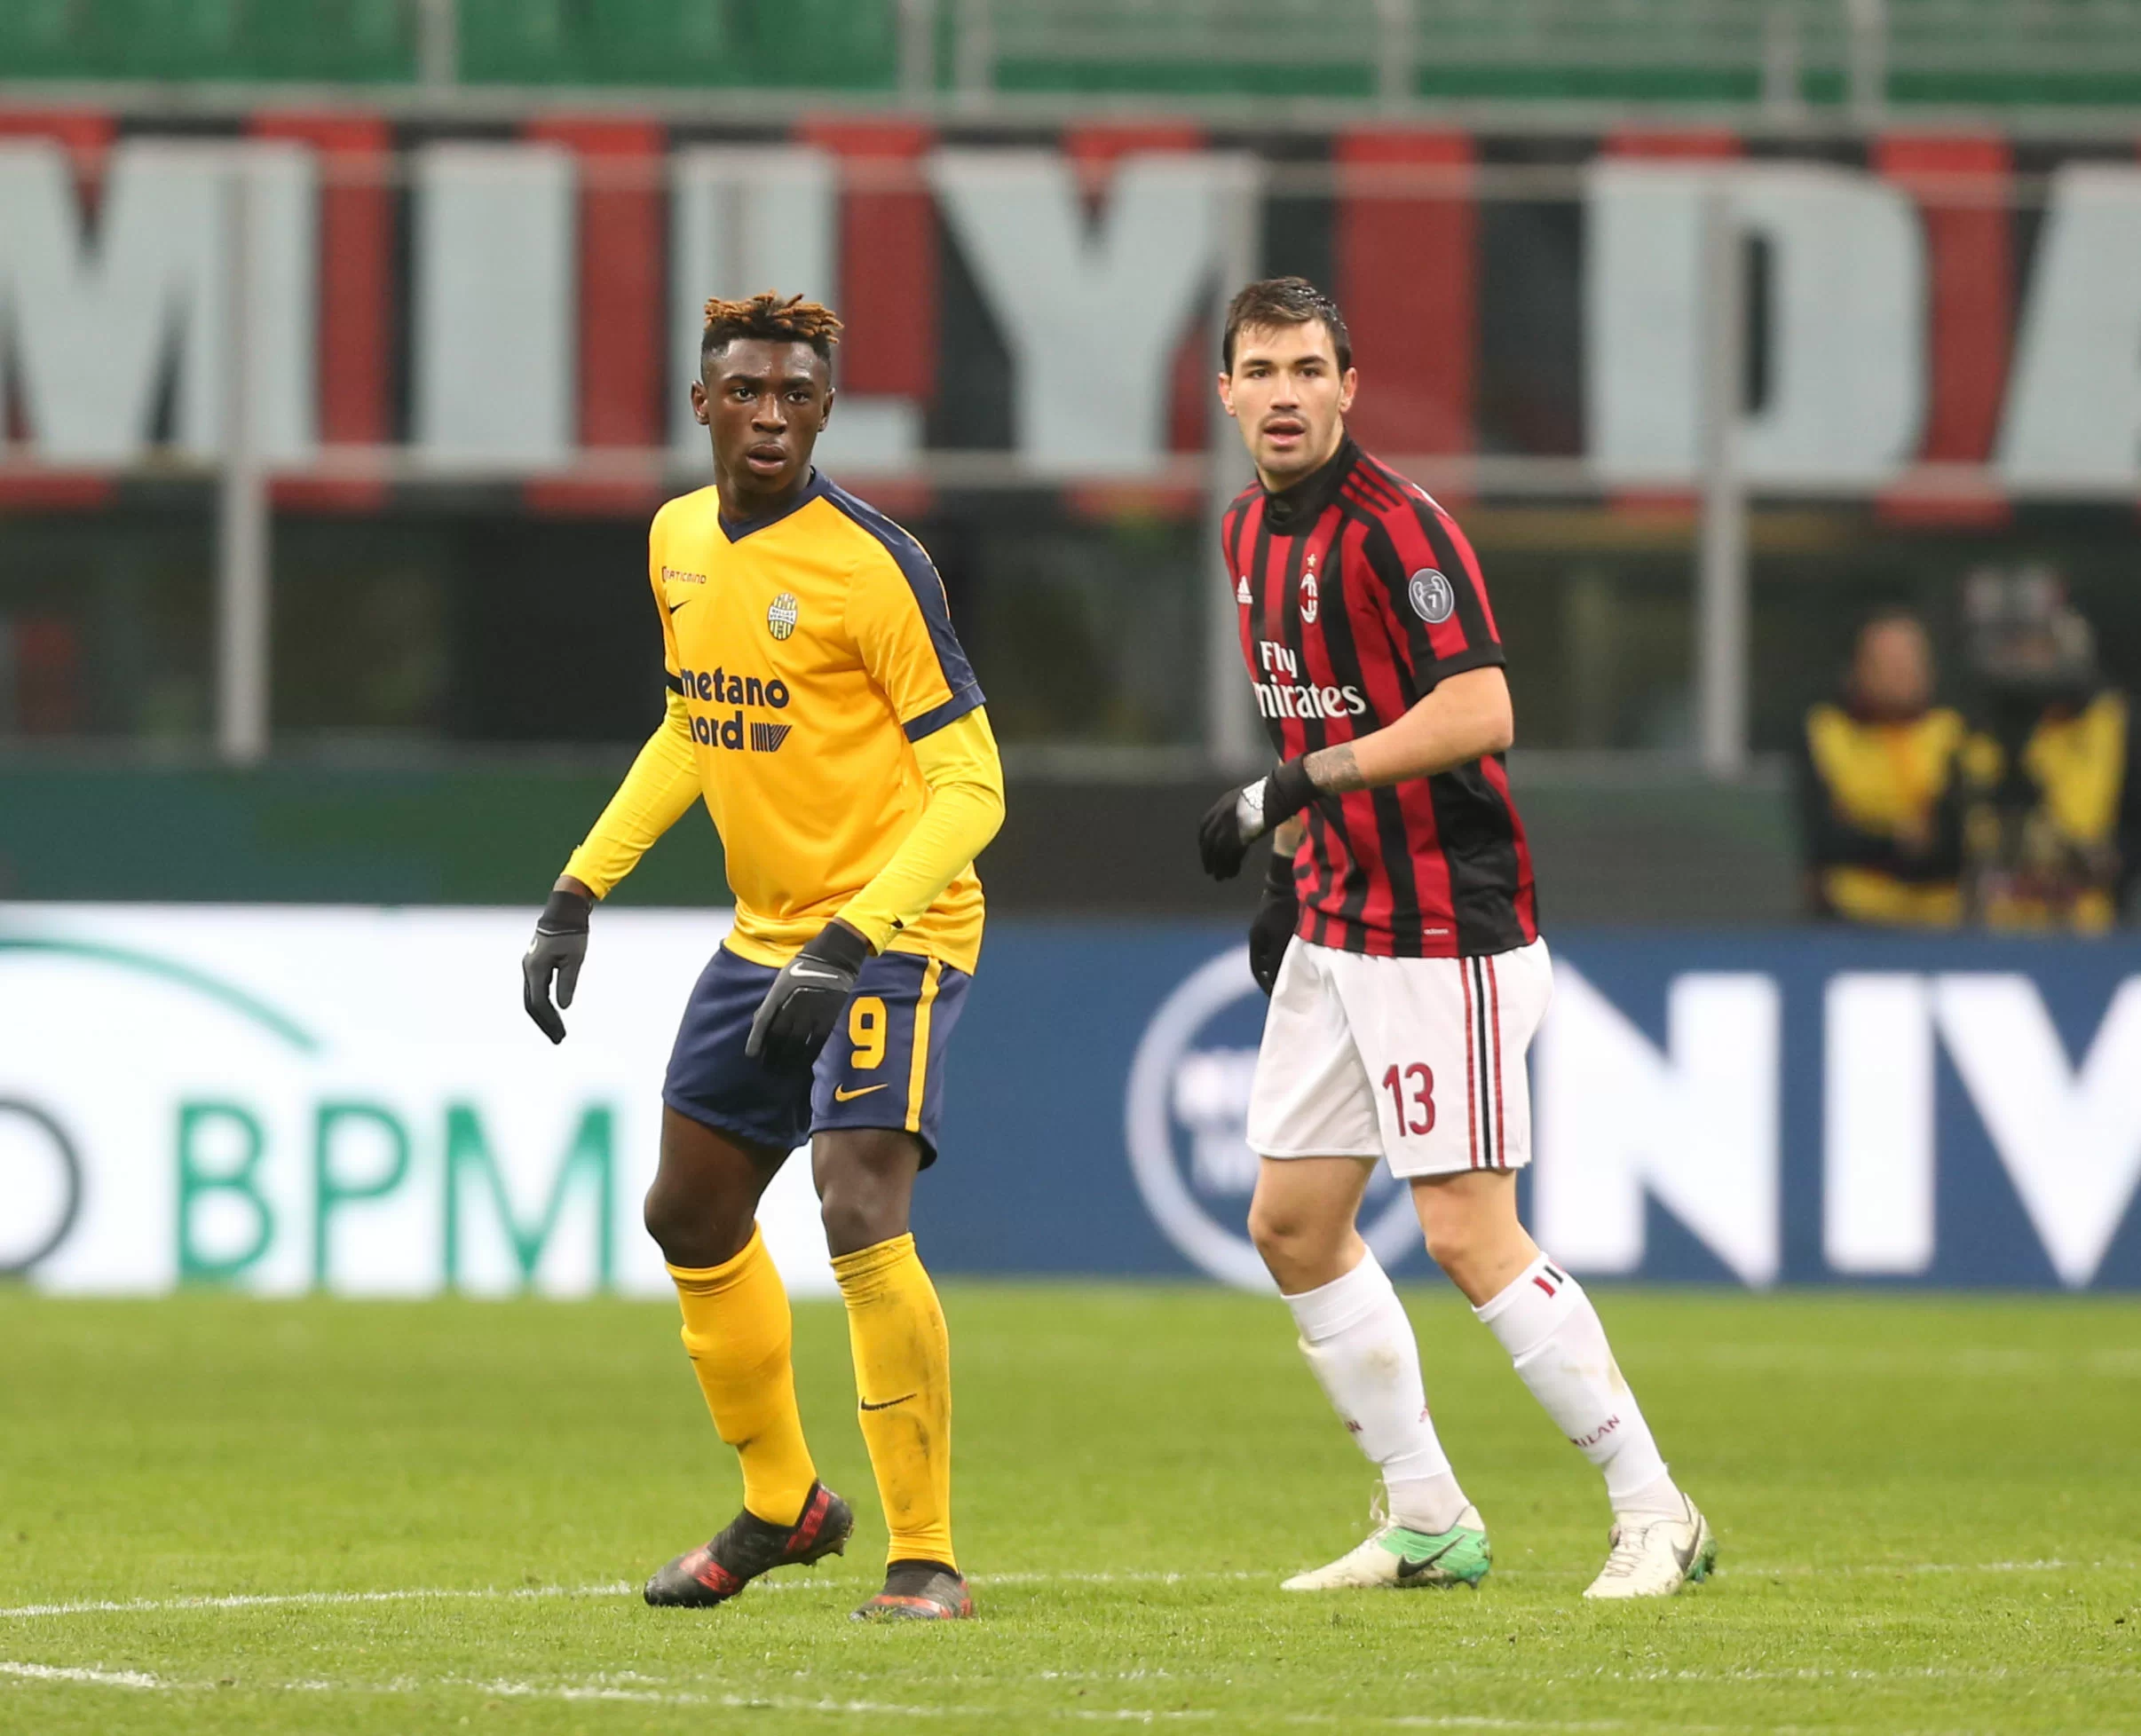 CALCIOMERCATO/ Milan, Kean rischia di rimanere un sogno: la Juventus vuole blindarlo